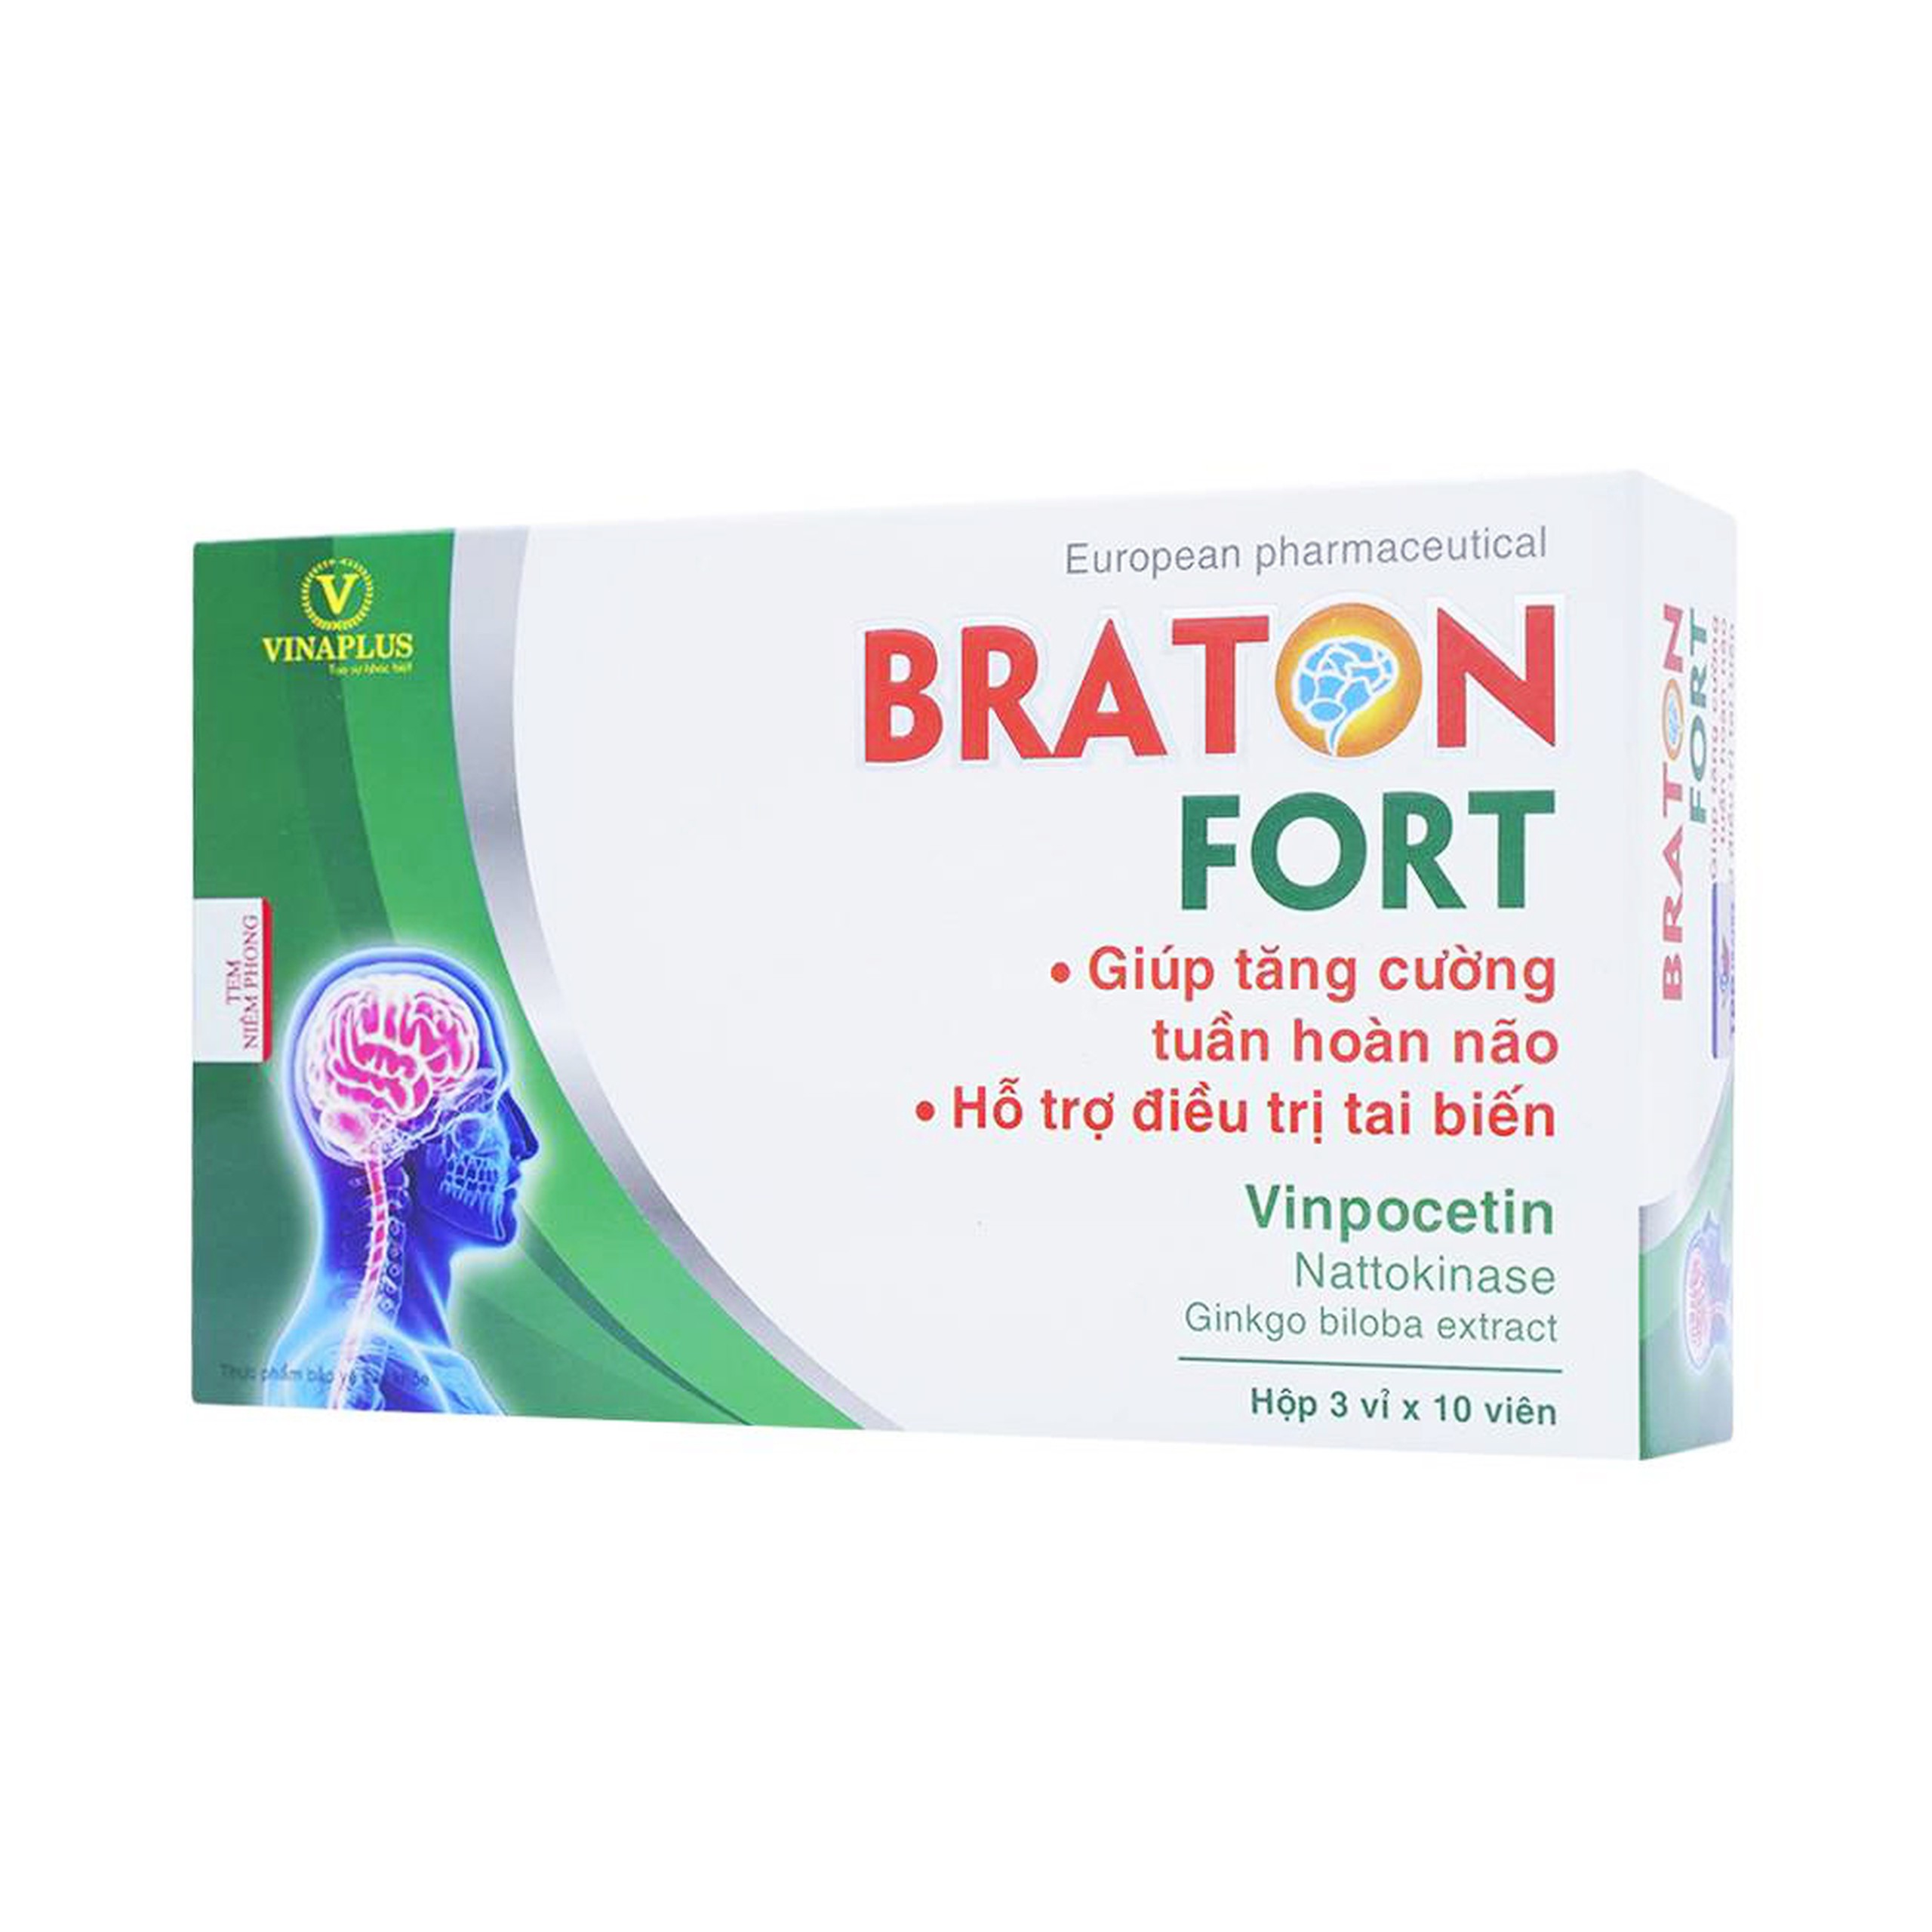 Viên uống Braton Fort Vinaplus tăng cường tuần hoàn não, hỗ trợ điều trị tai biến (3 vỉ x 10 viên)